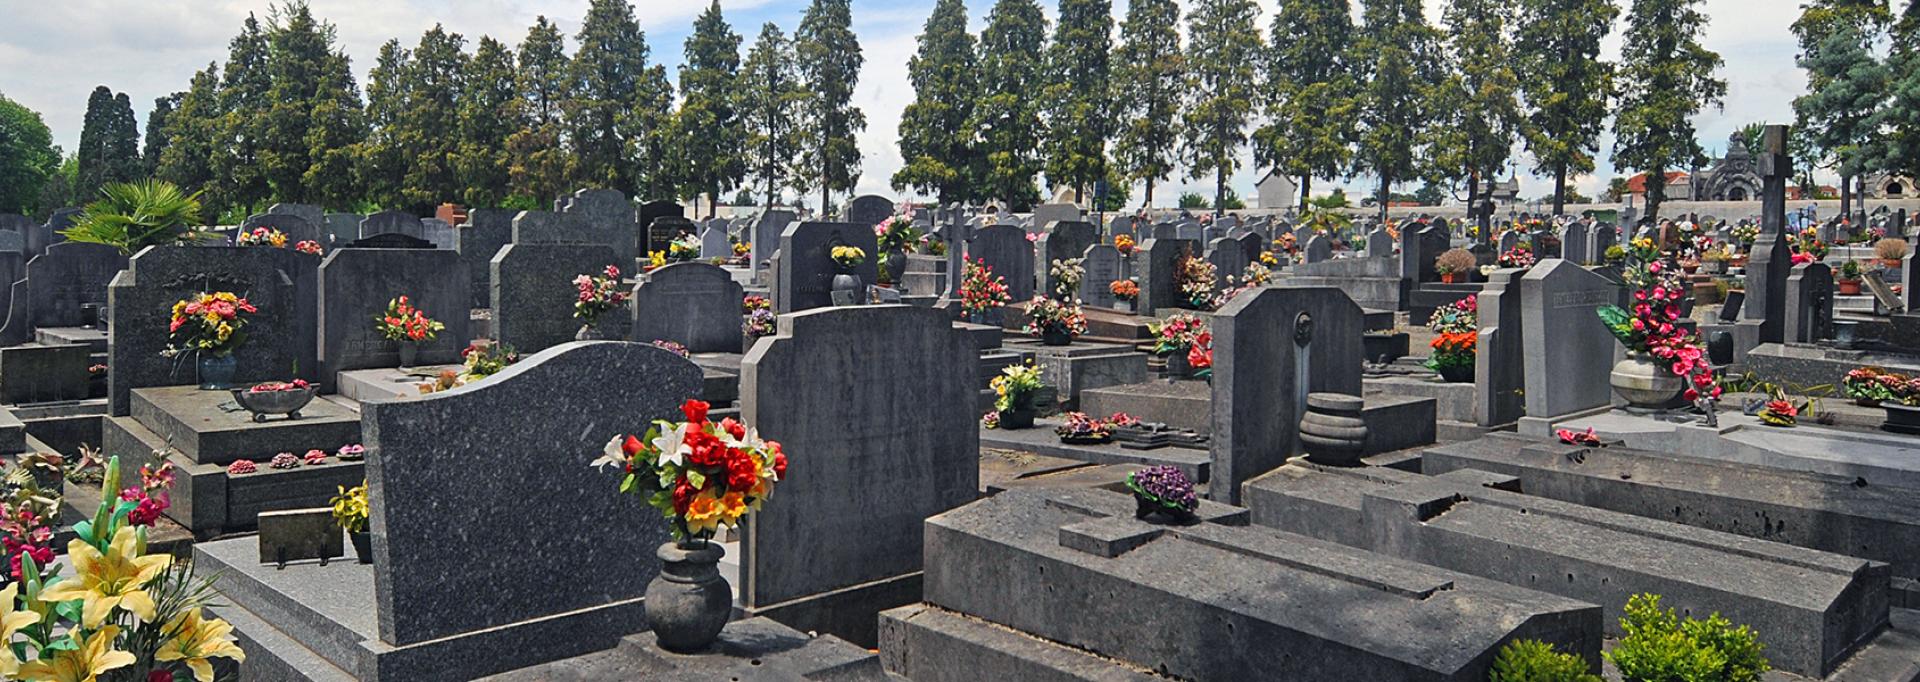 Des tombes dans un cimetière